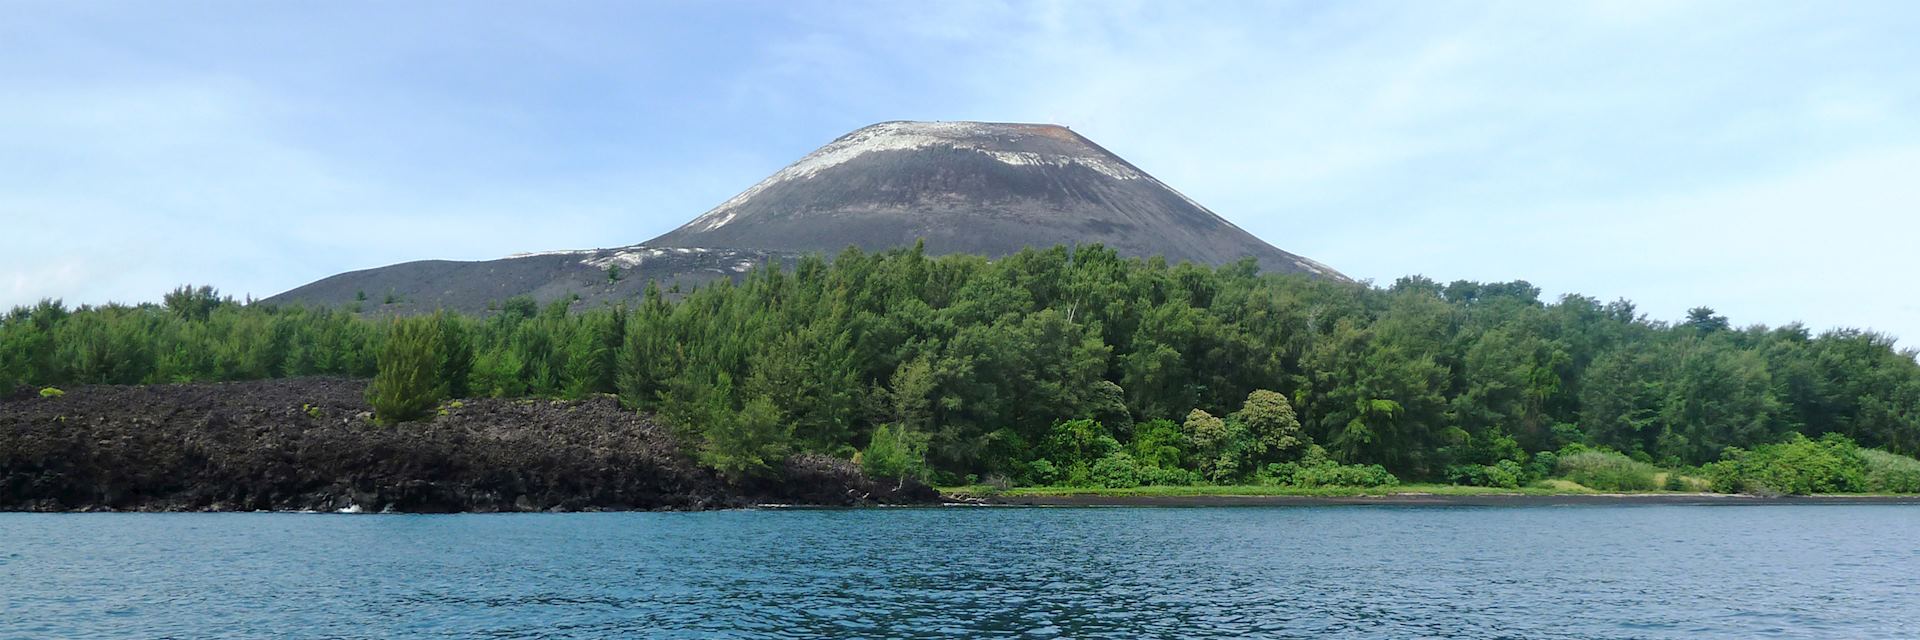 Mount Krakatau